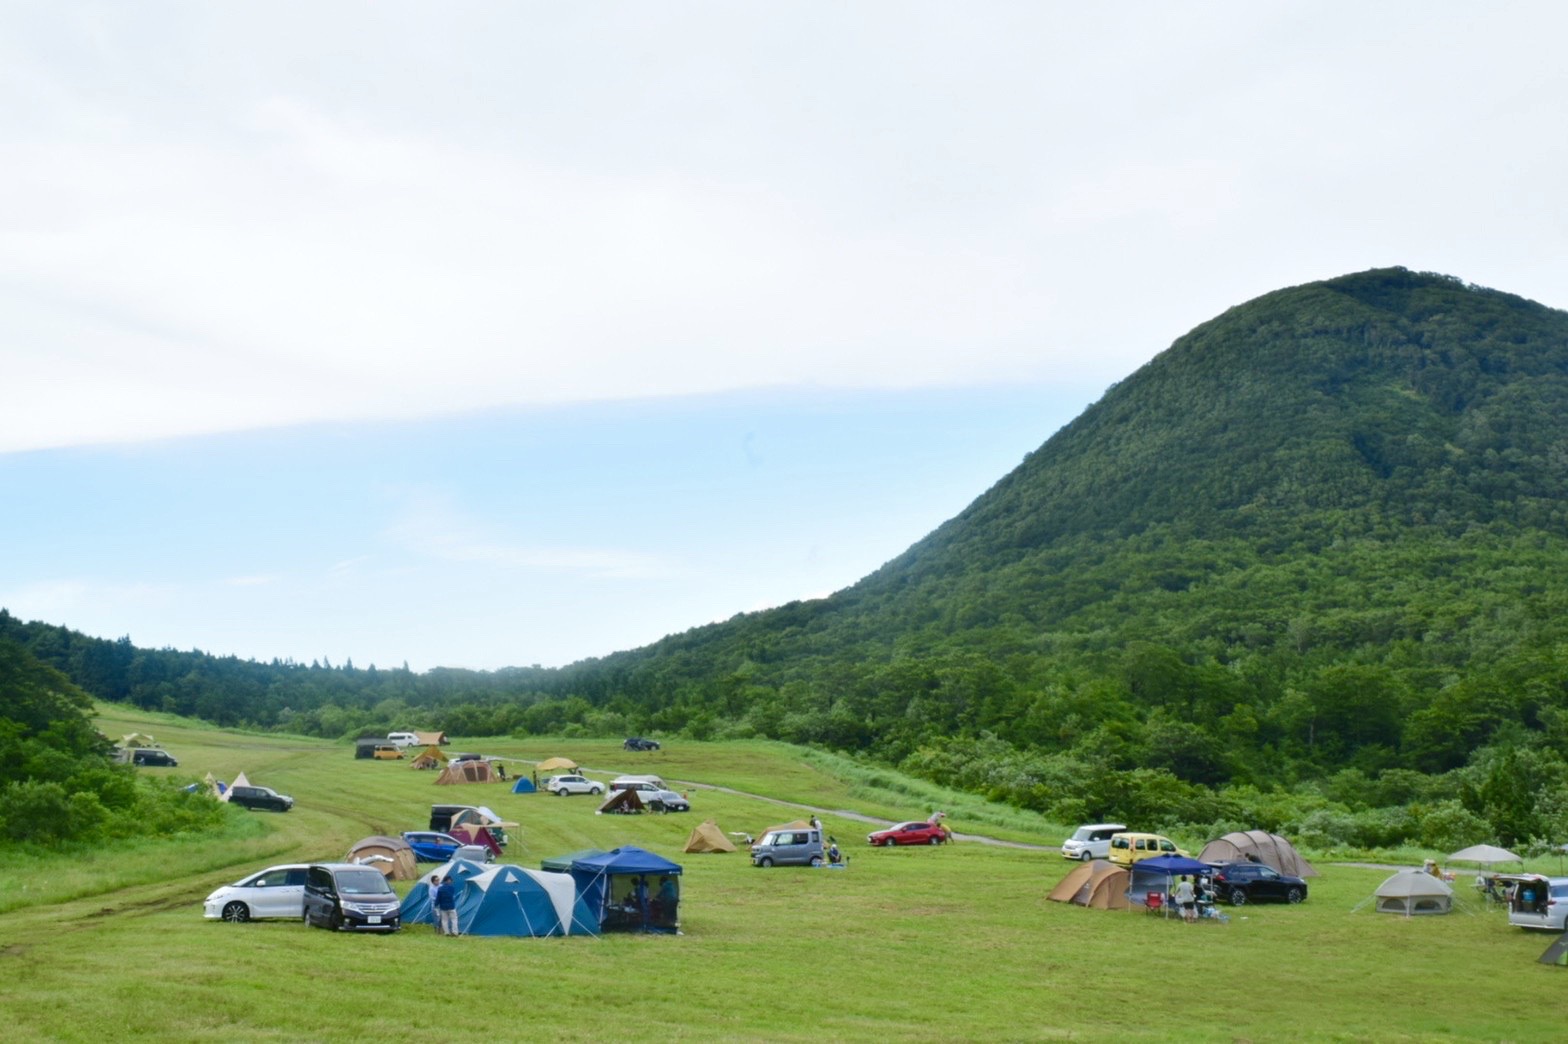 夏油高原スキー場が通年型のリゾート地へ。高規格キャンプ場で快適キャンプ！
...